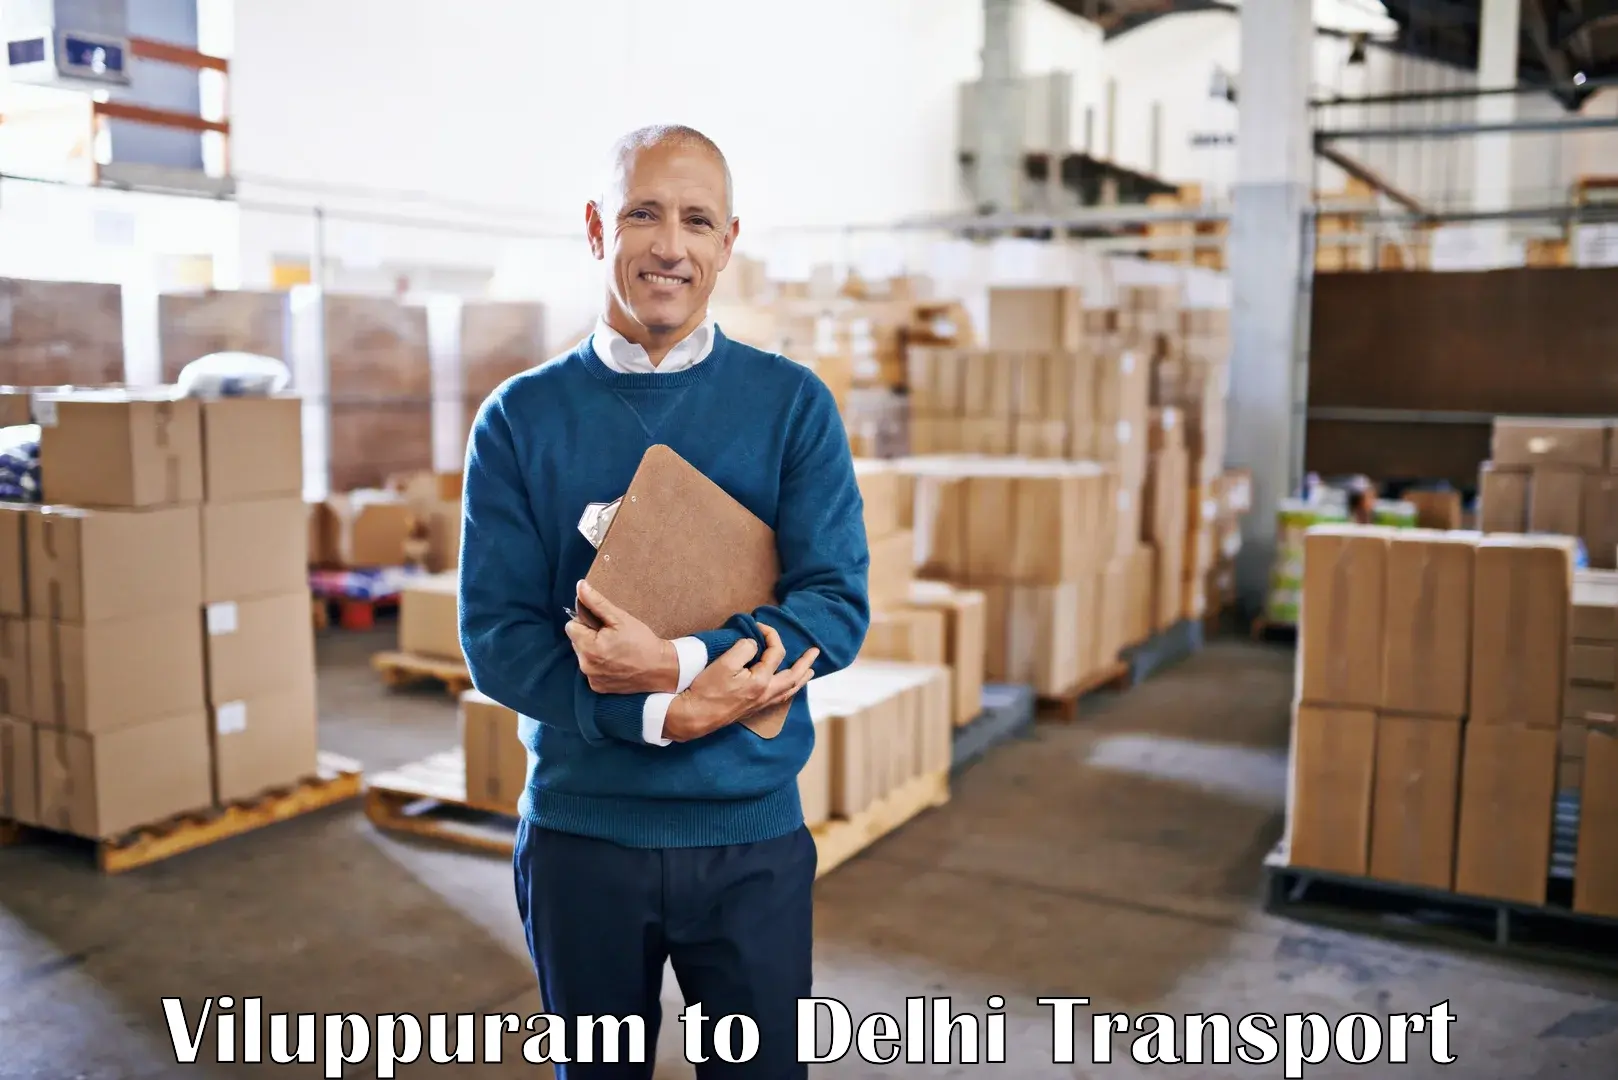 Commercial transport service Viluppuram to Jawaharlal Nehru University New Delhi